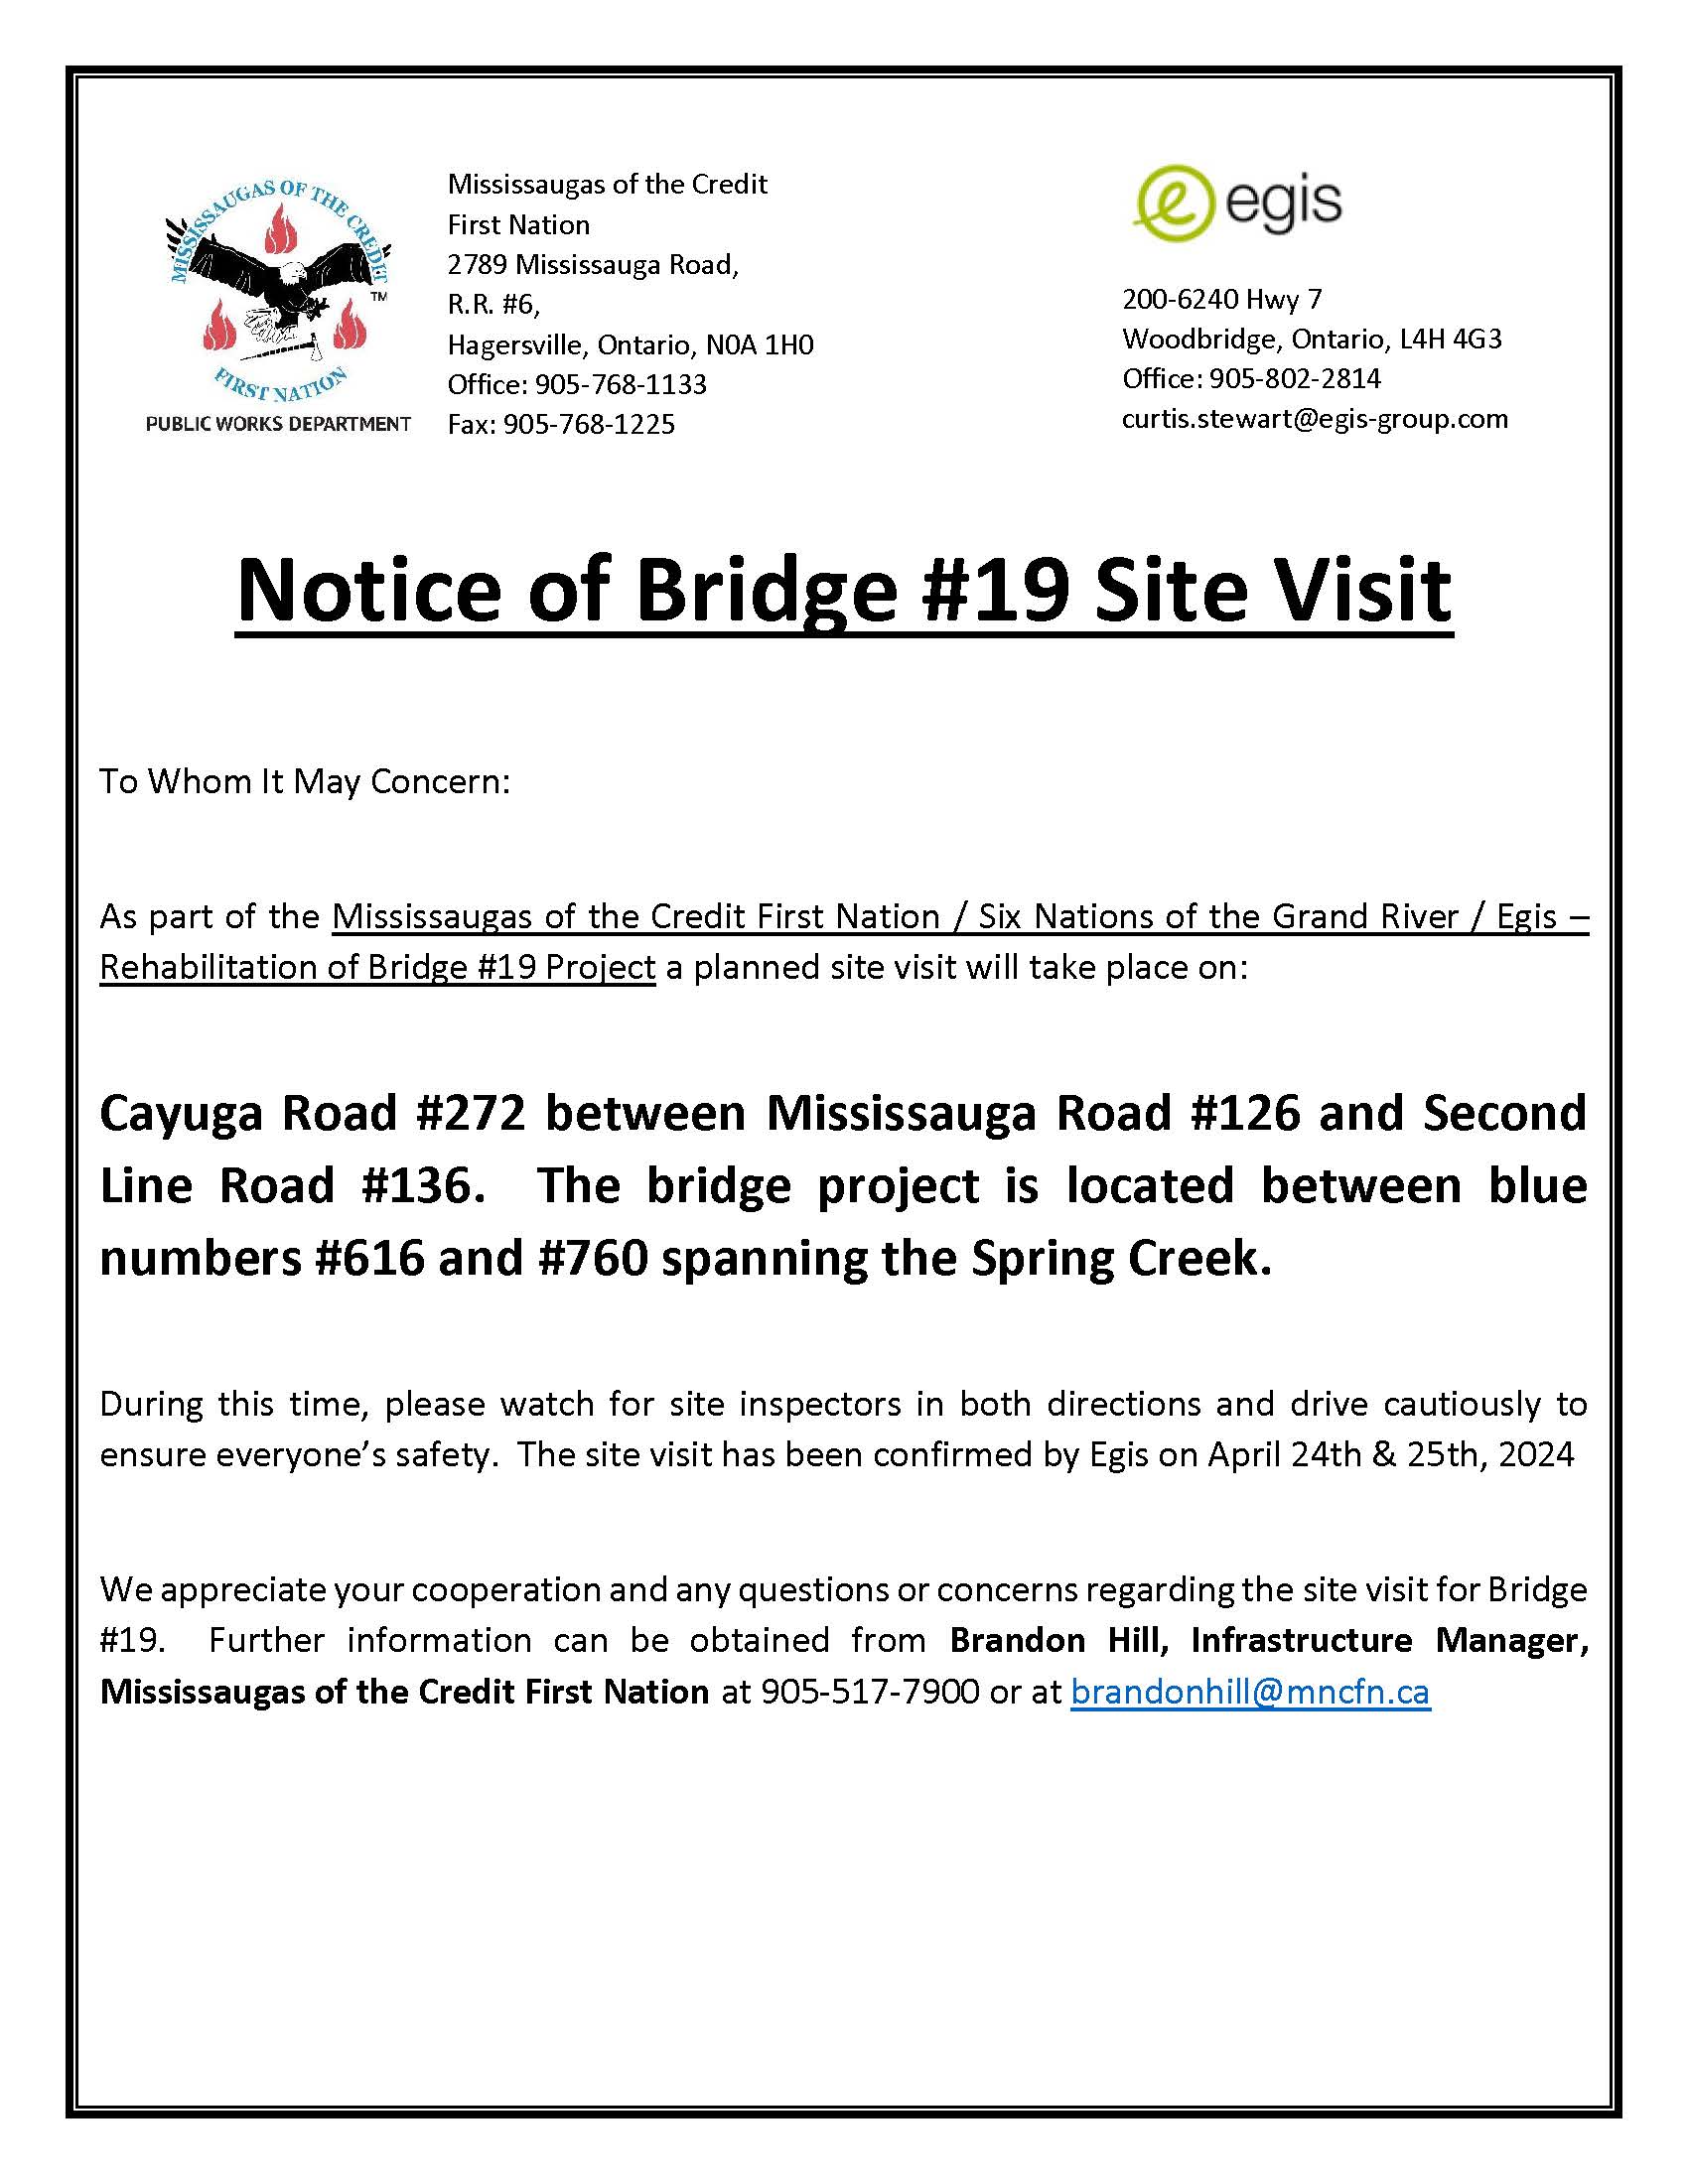 Notice of Bridge #19 site visit